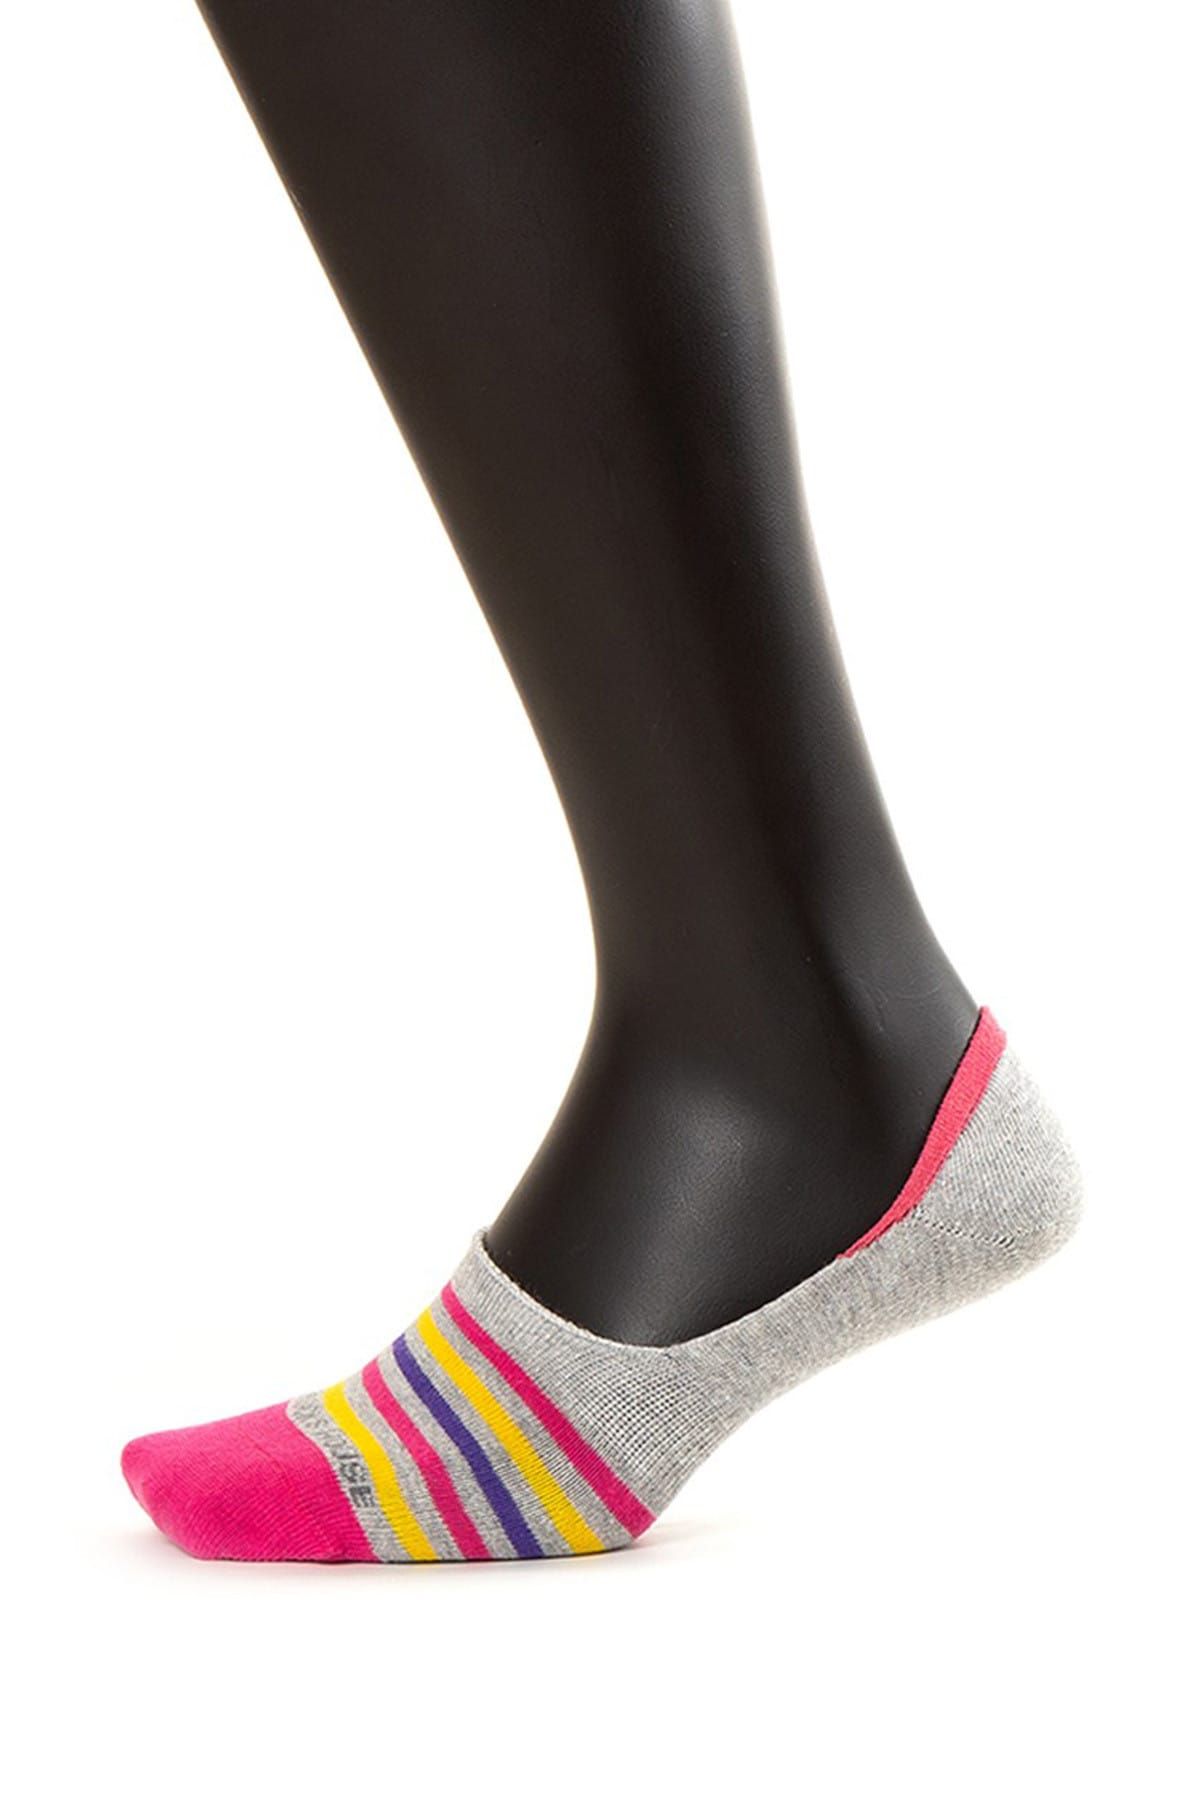 The Socks House Kadın Fuşya Renkli Şerit Desenli Footie